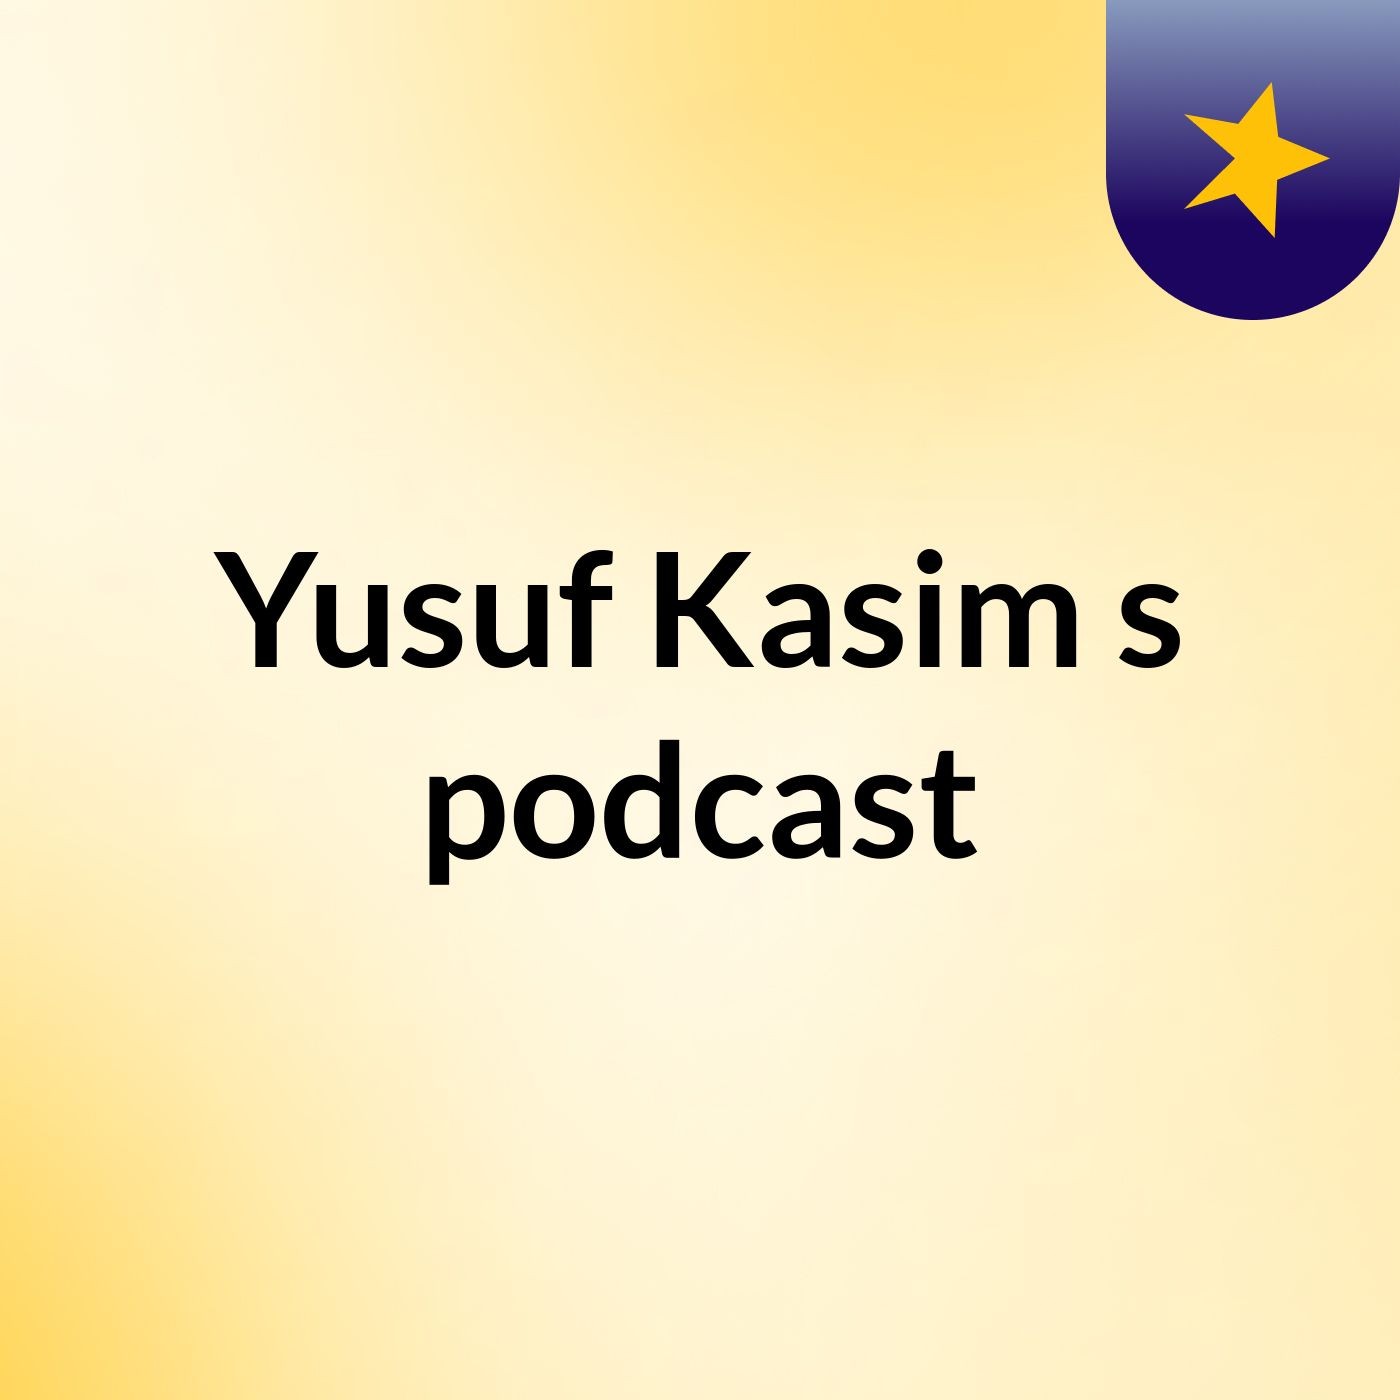 Yusuf Kasim's podcast